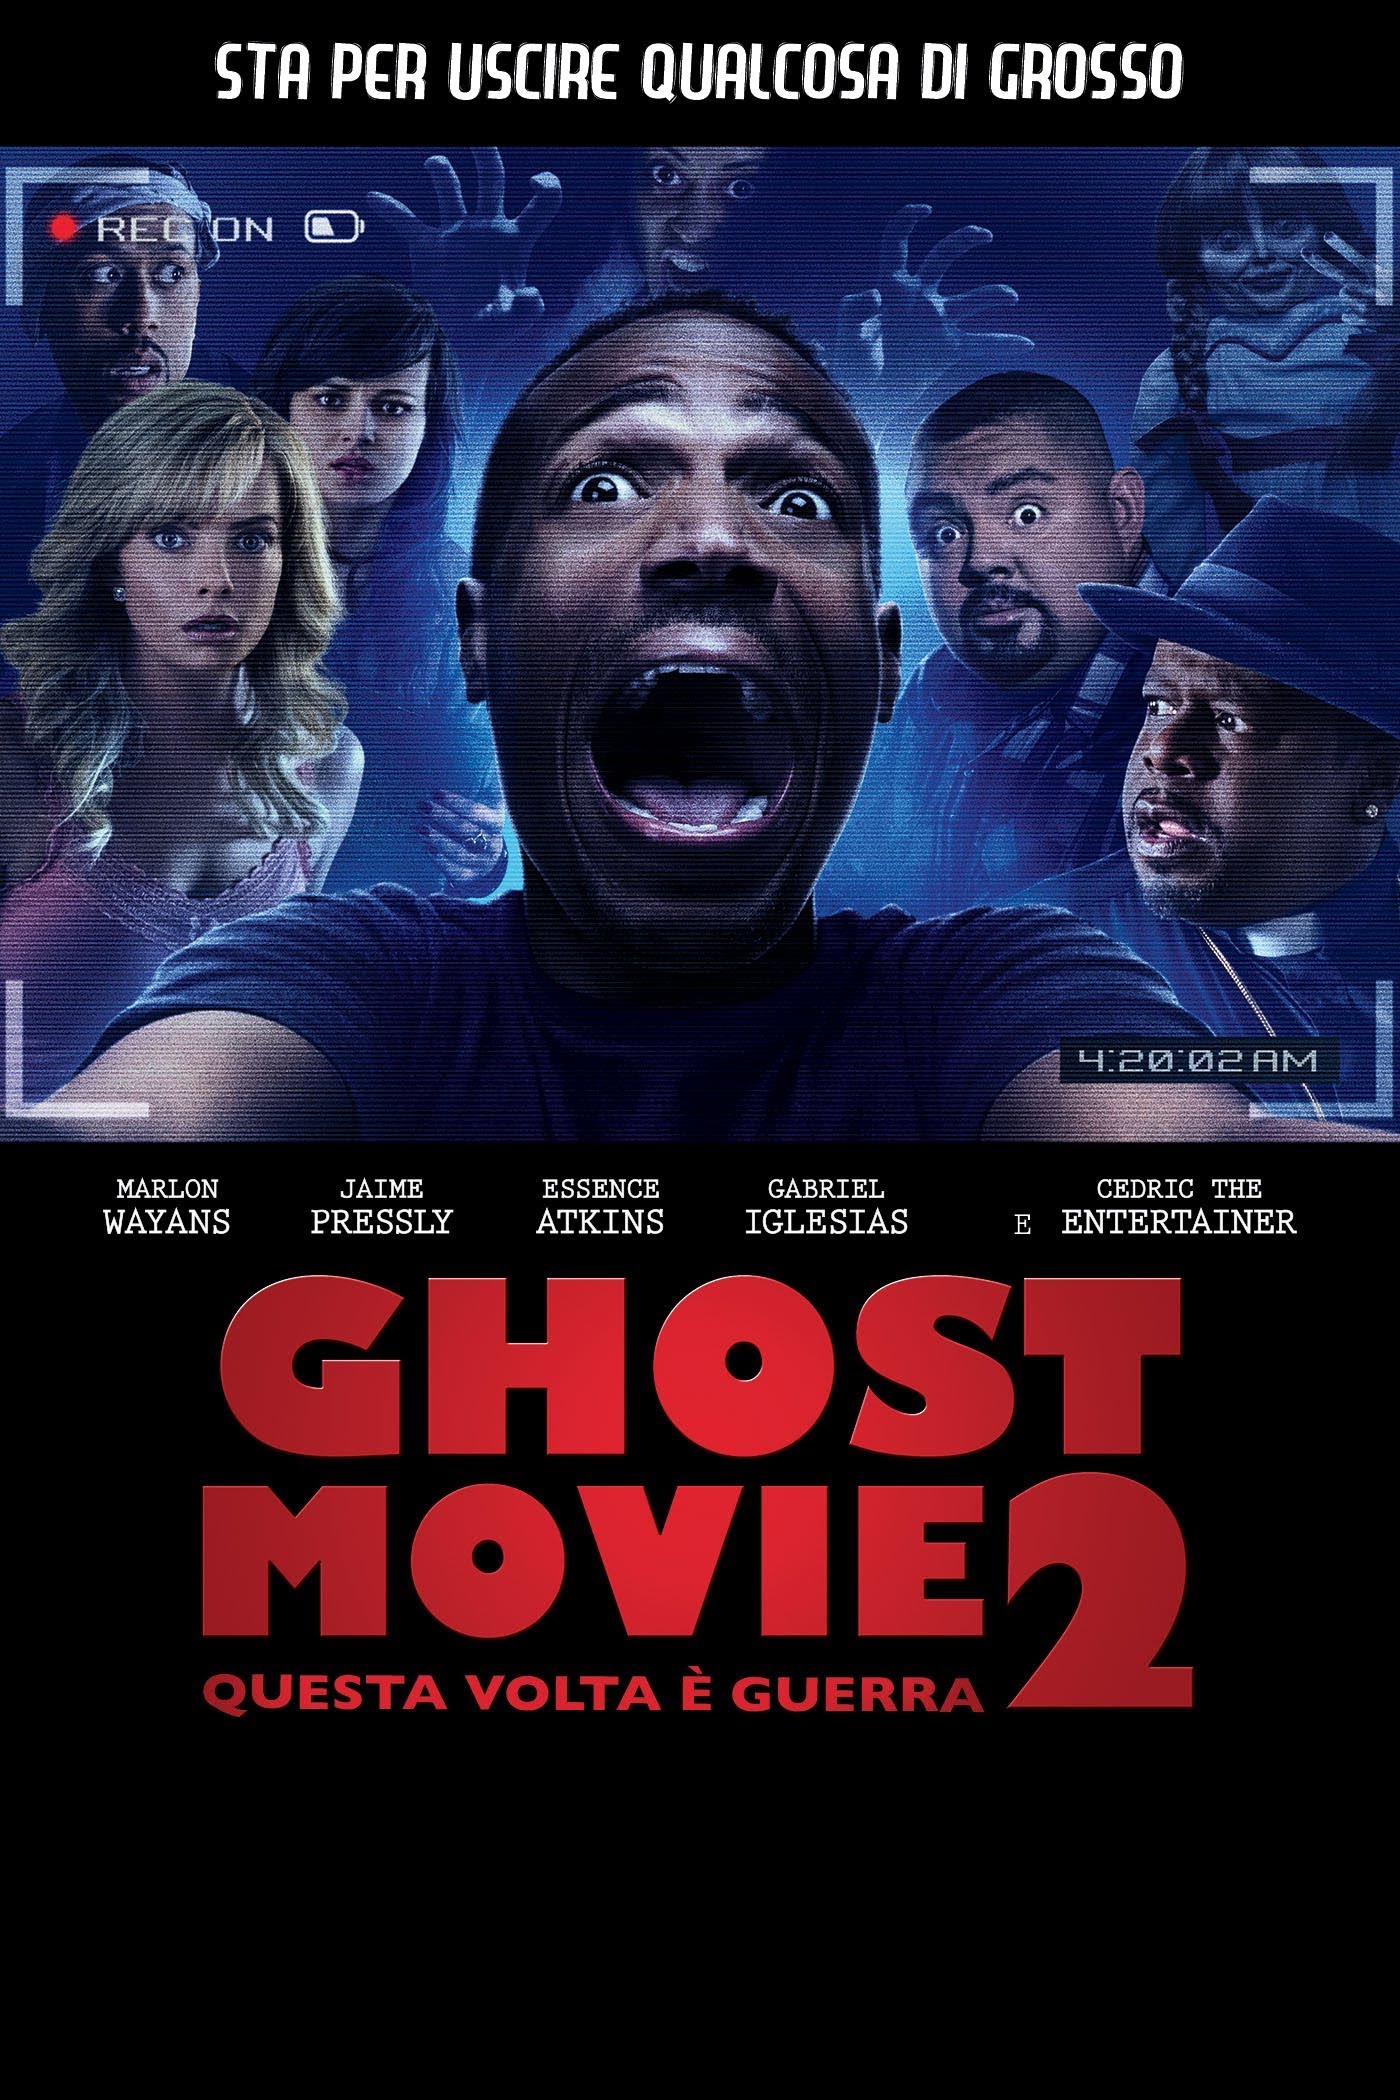 Ghost Movie 2 – Questa volta è guerra [HD] (2014)